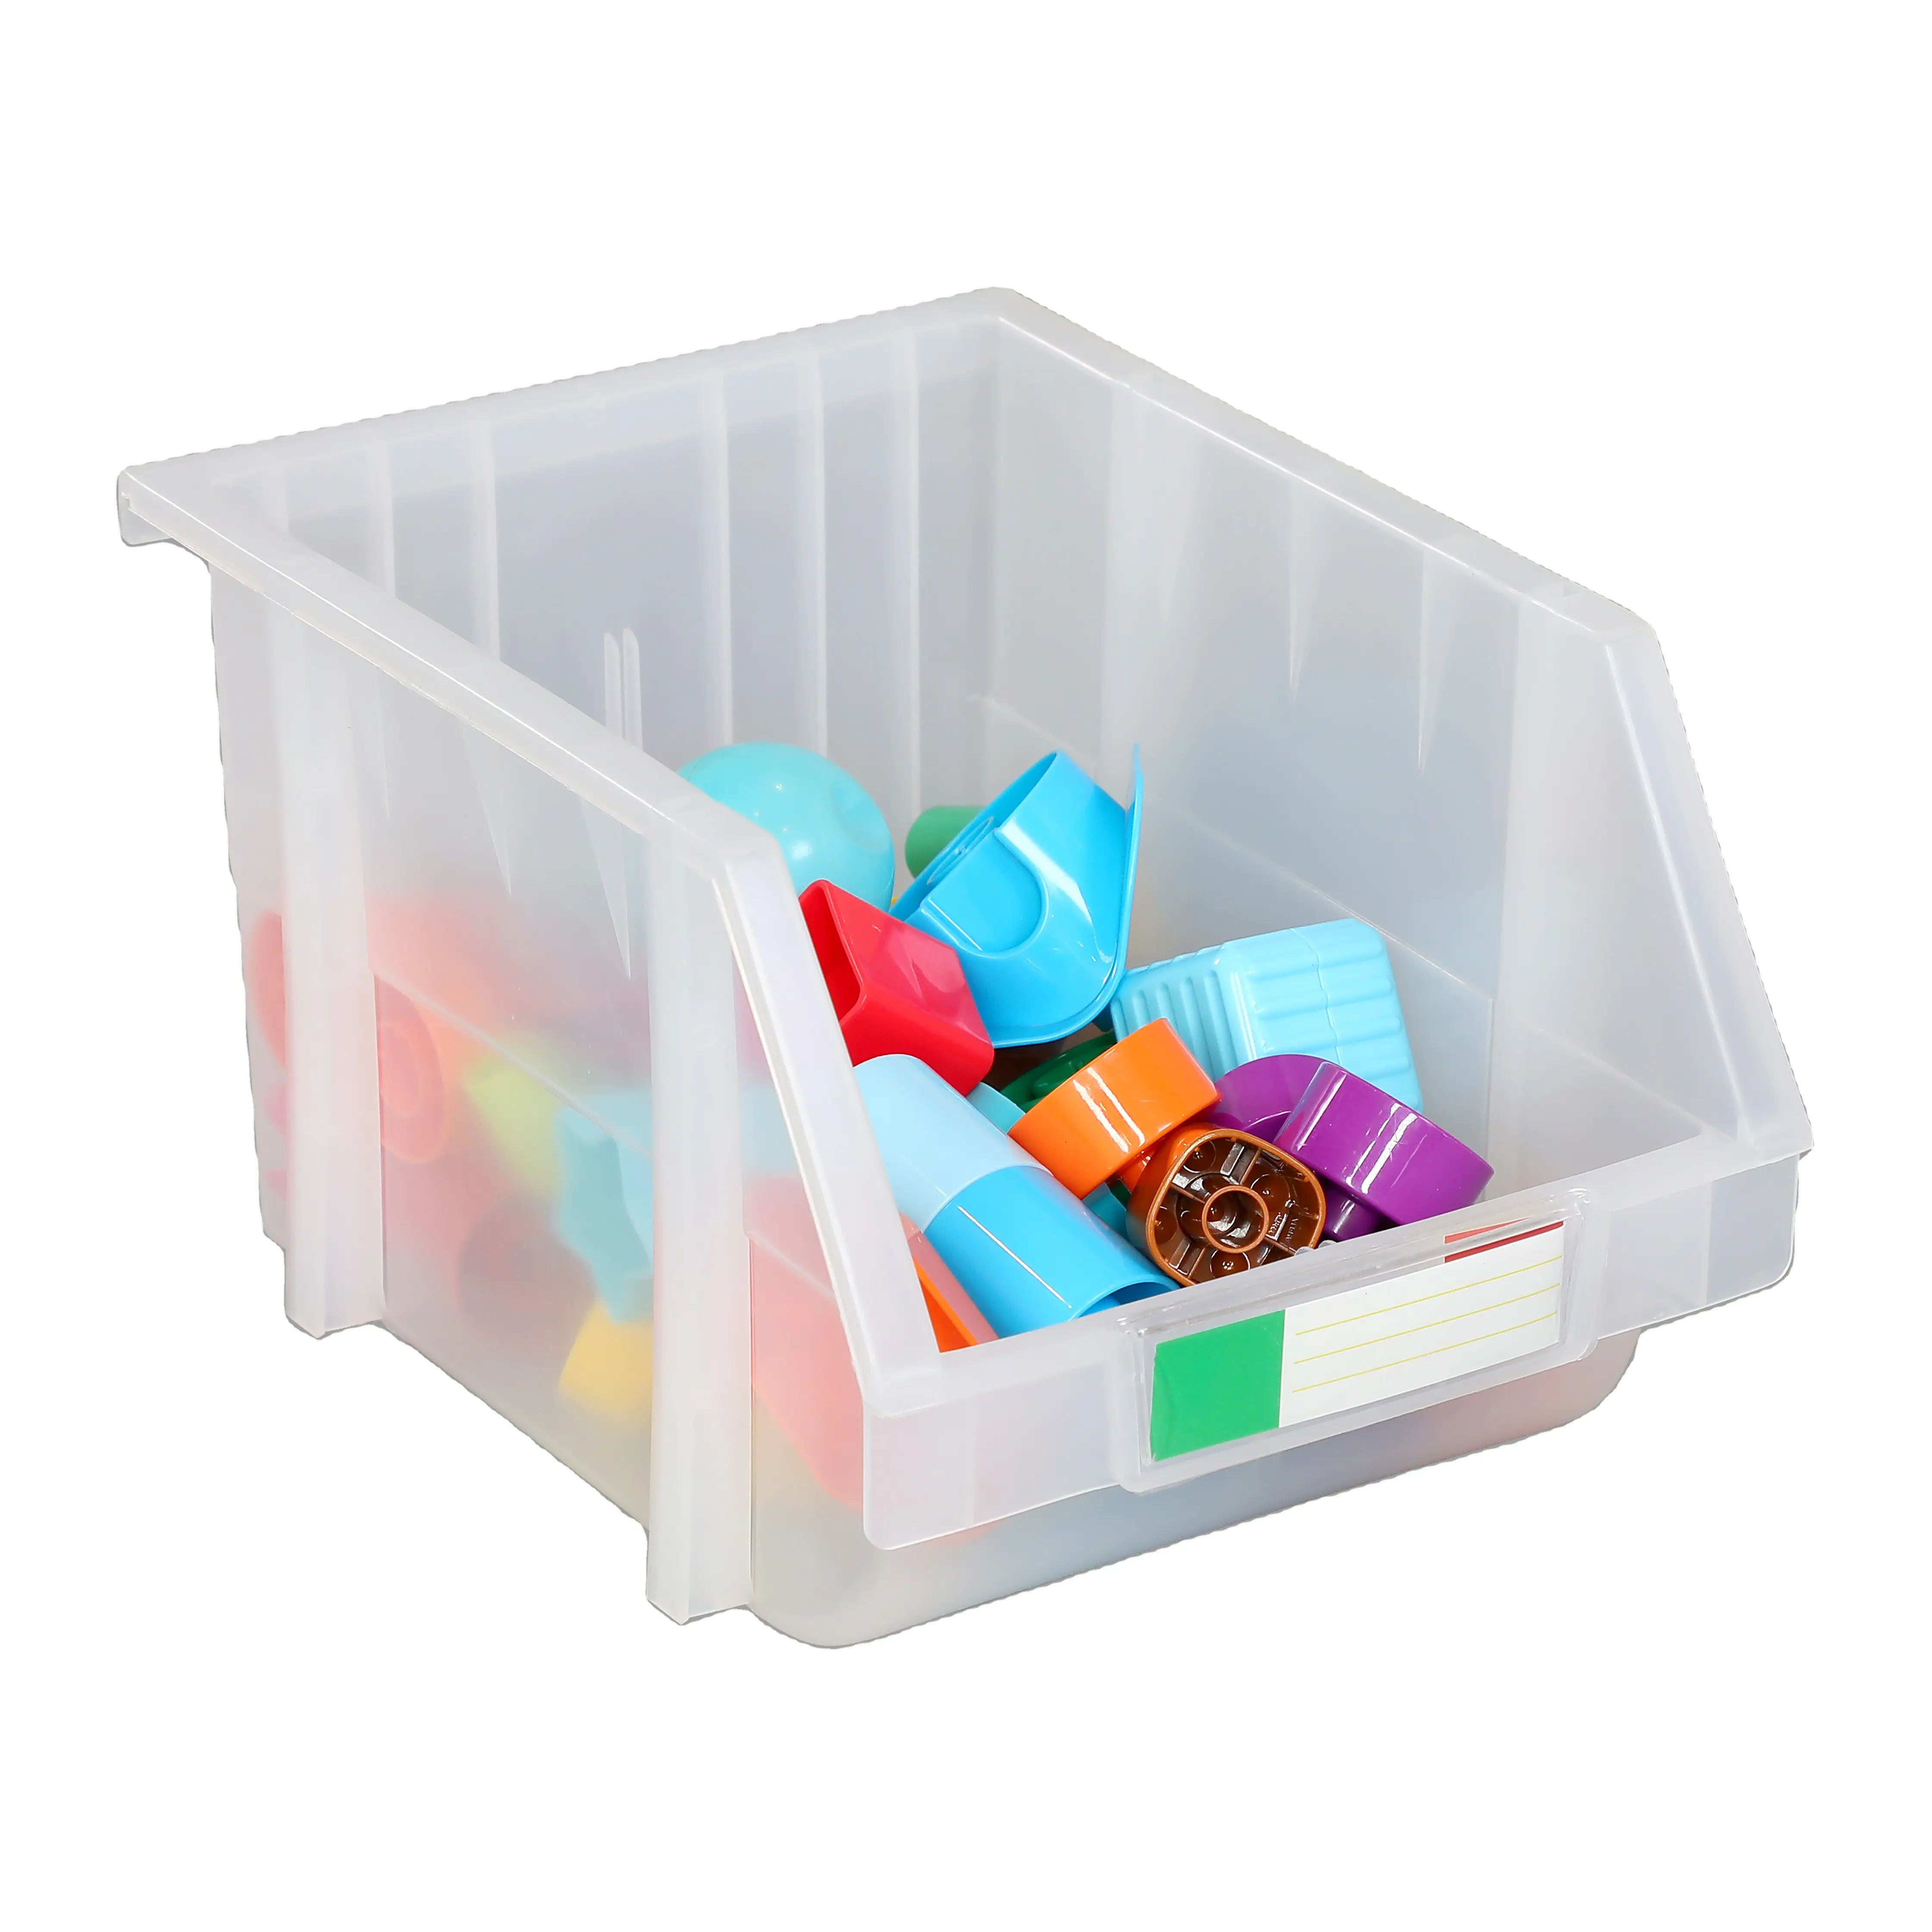 Entrepôt transparent étagère industrielle stockage médicaments vêtements pièces de jouets stockage en plastique bacs de rangement empilables